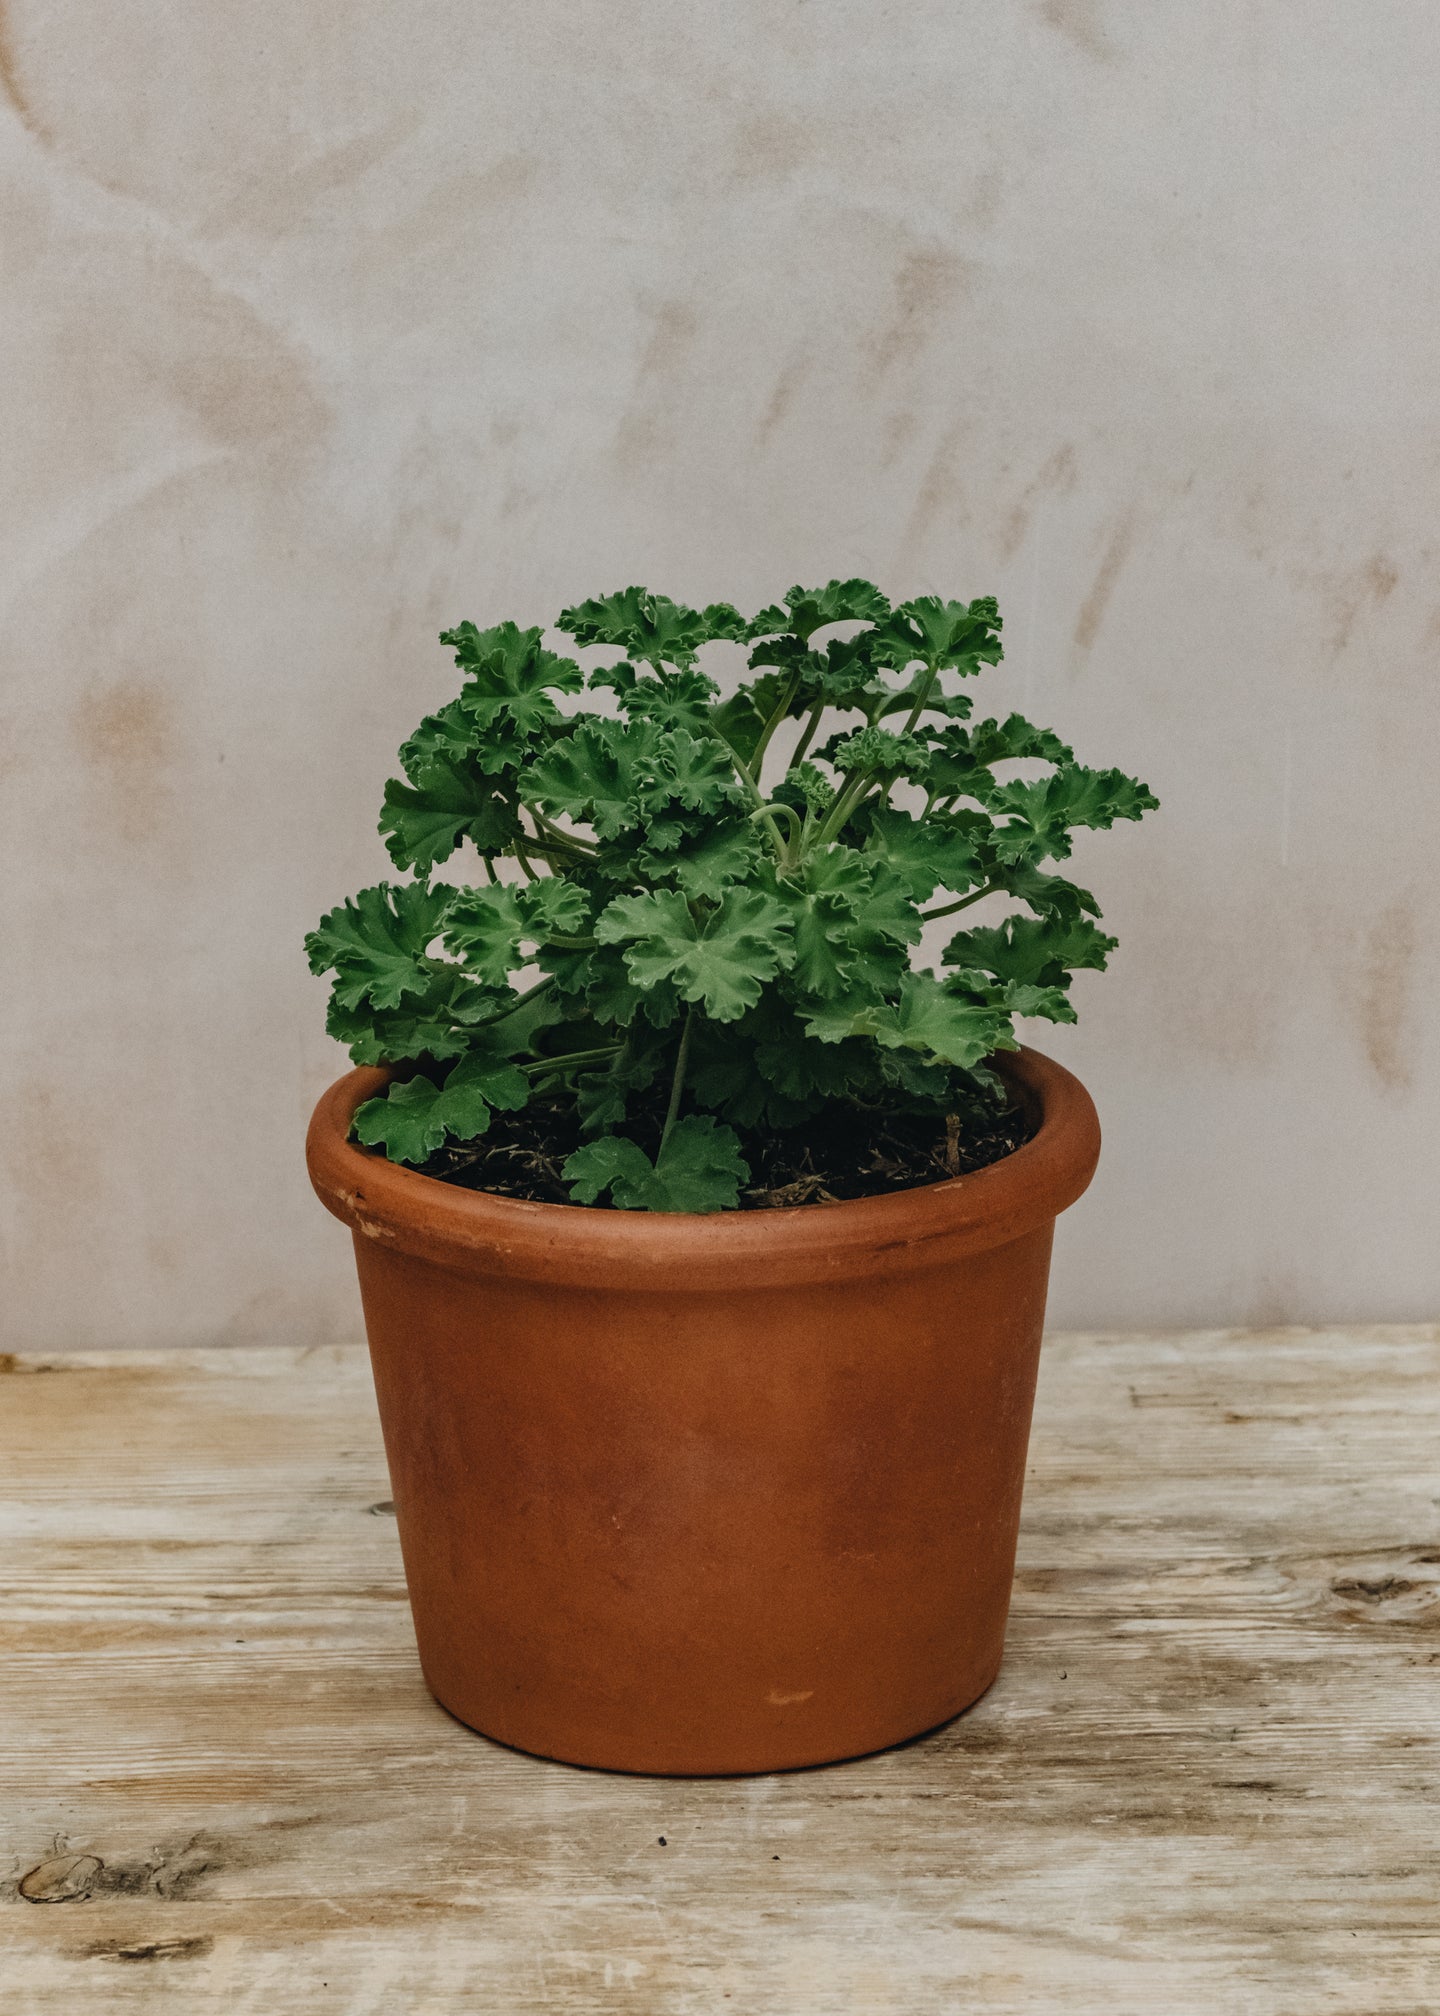 Pelargonium Old Spice in Terracotta Pot